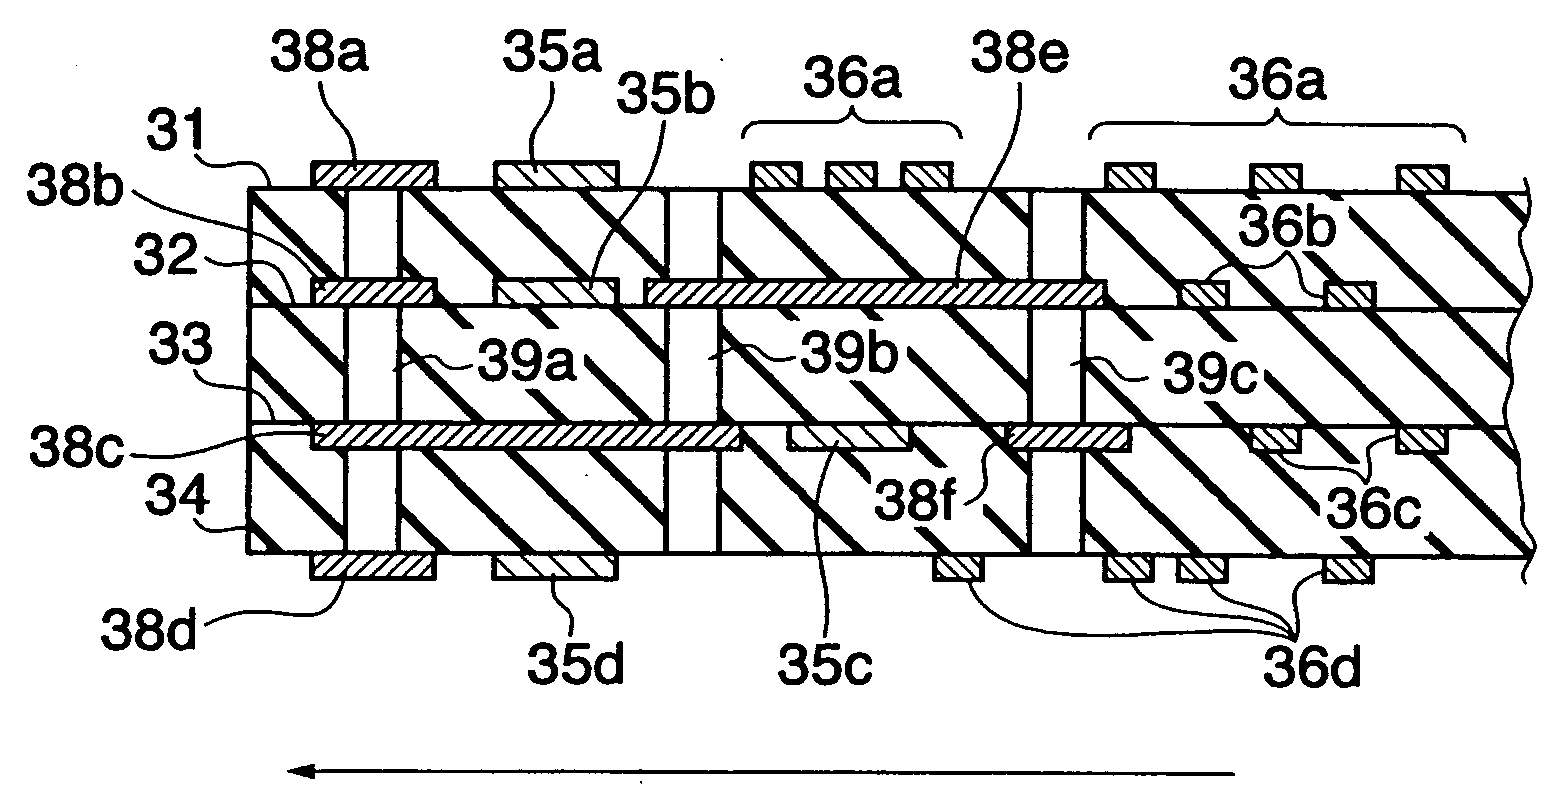 Multi-layered printed wiring board